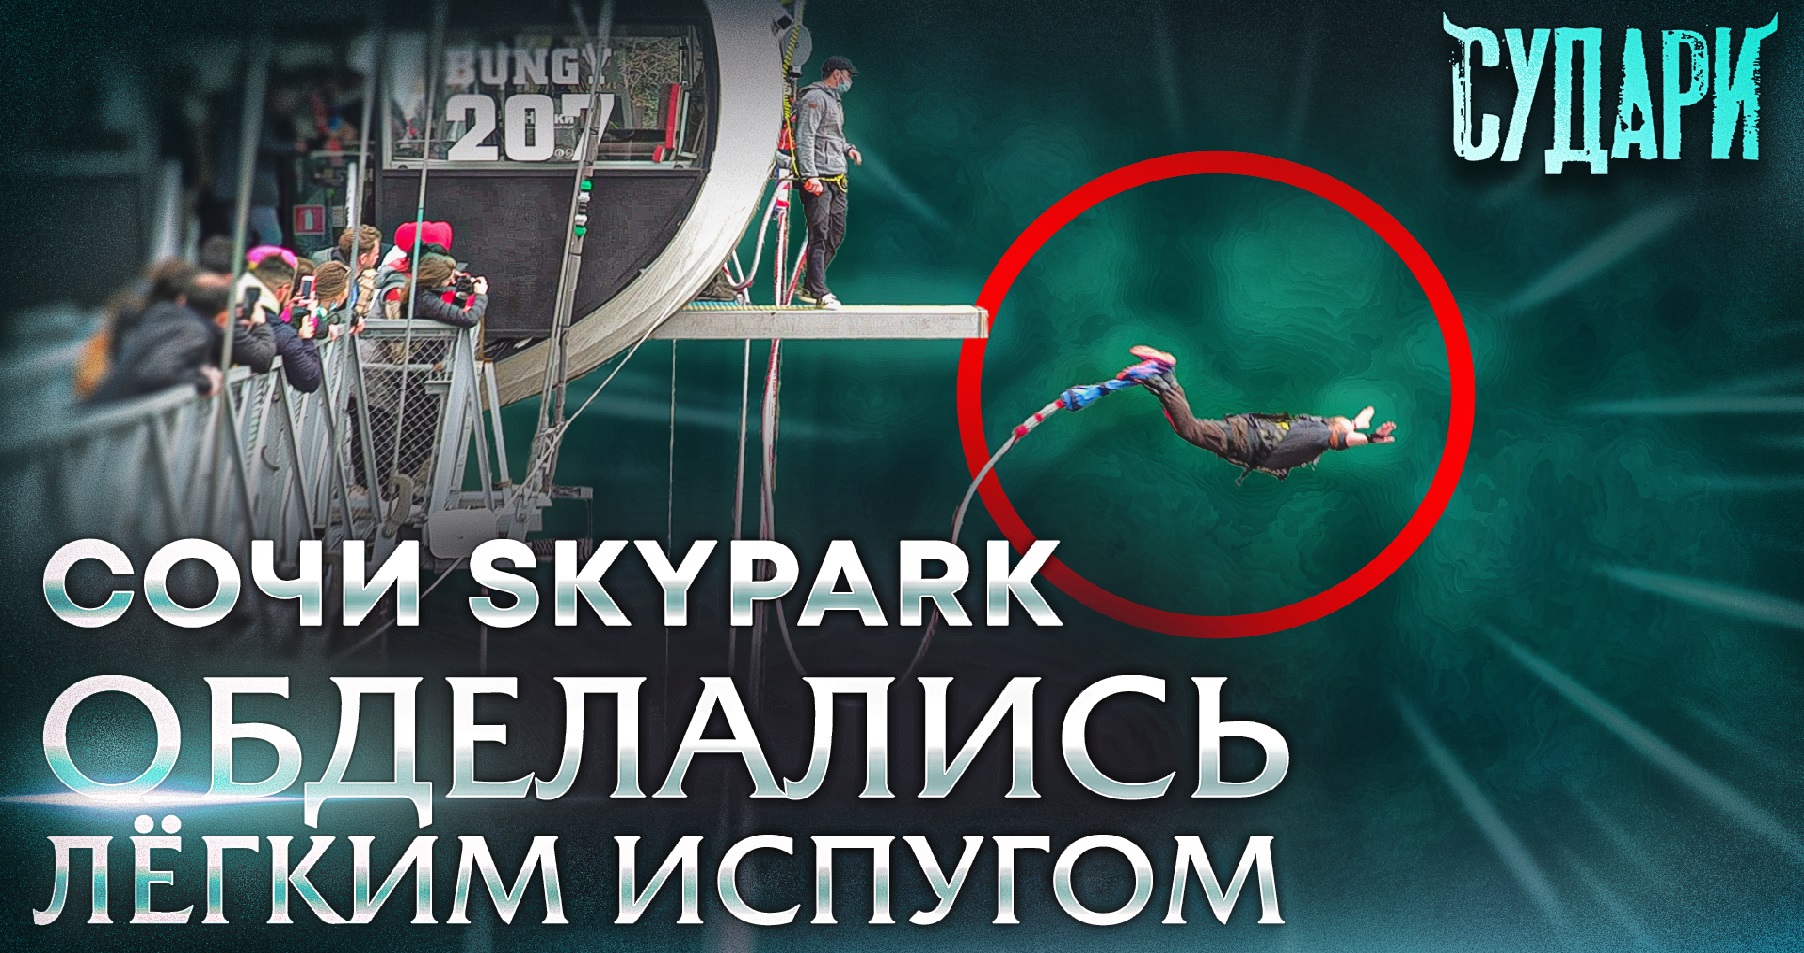 Сочи Скайпарк обзор - экстремальные аттракционы: банджи прыжок 207, троллей, зиплайн | Skypark 2021